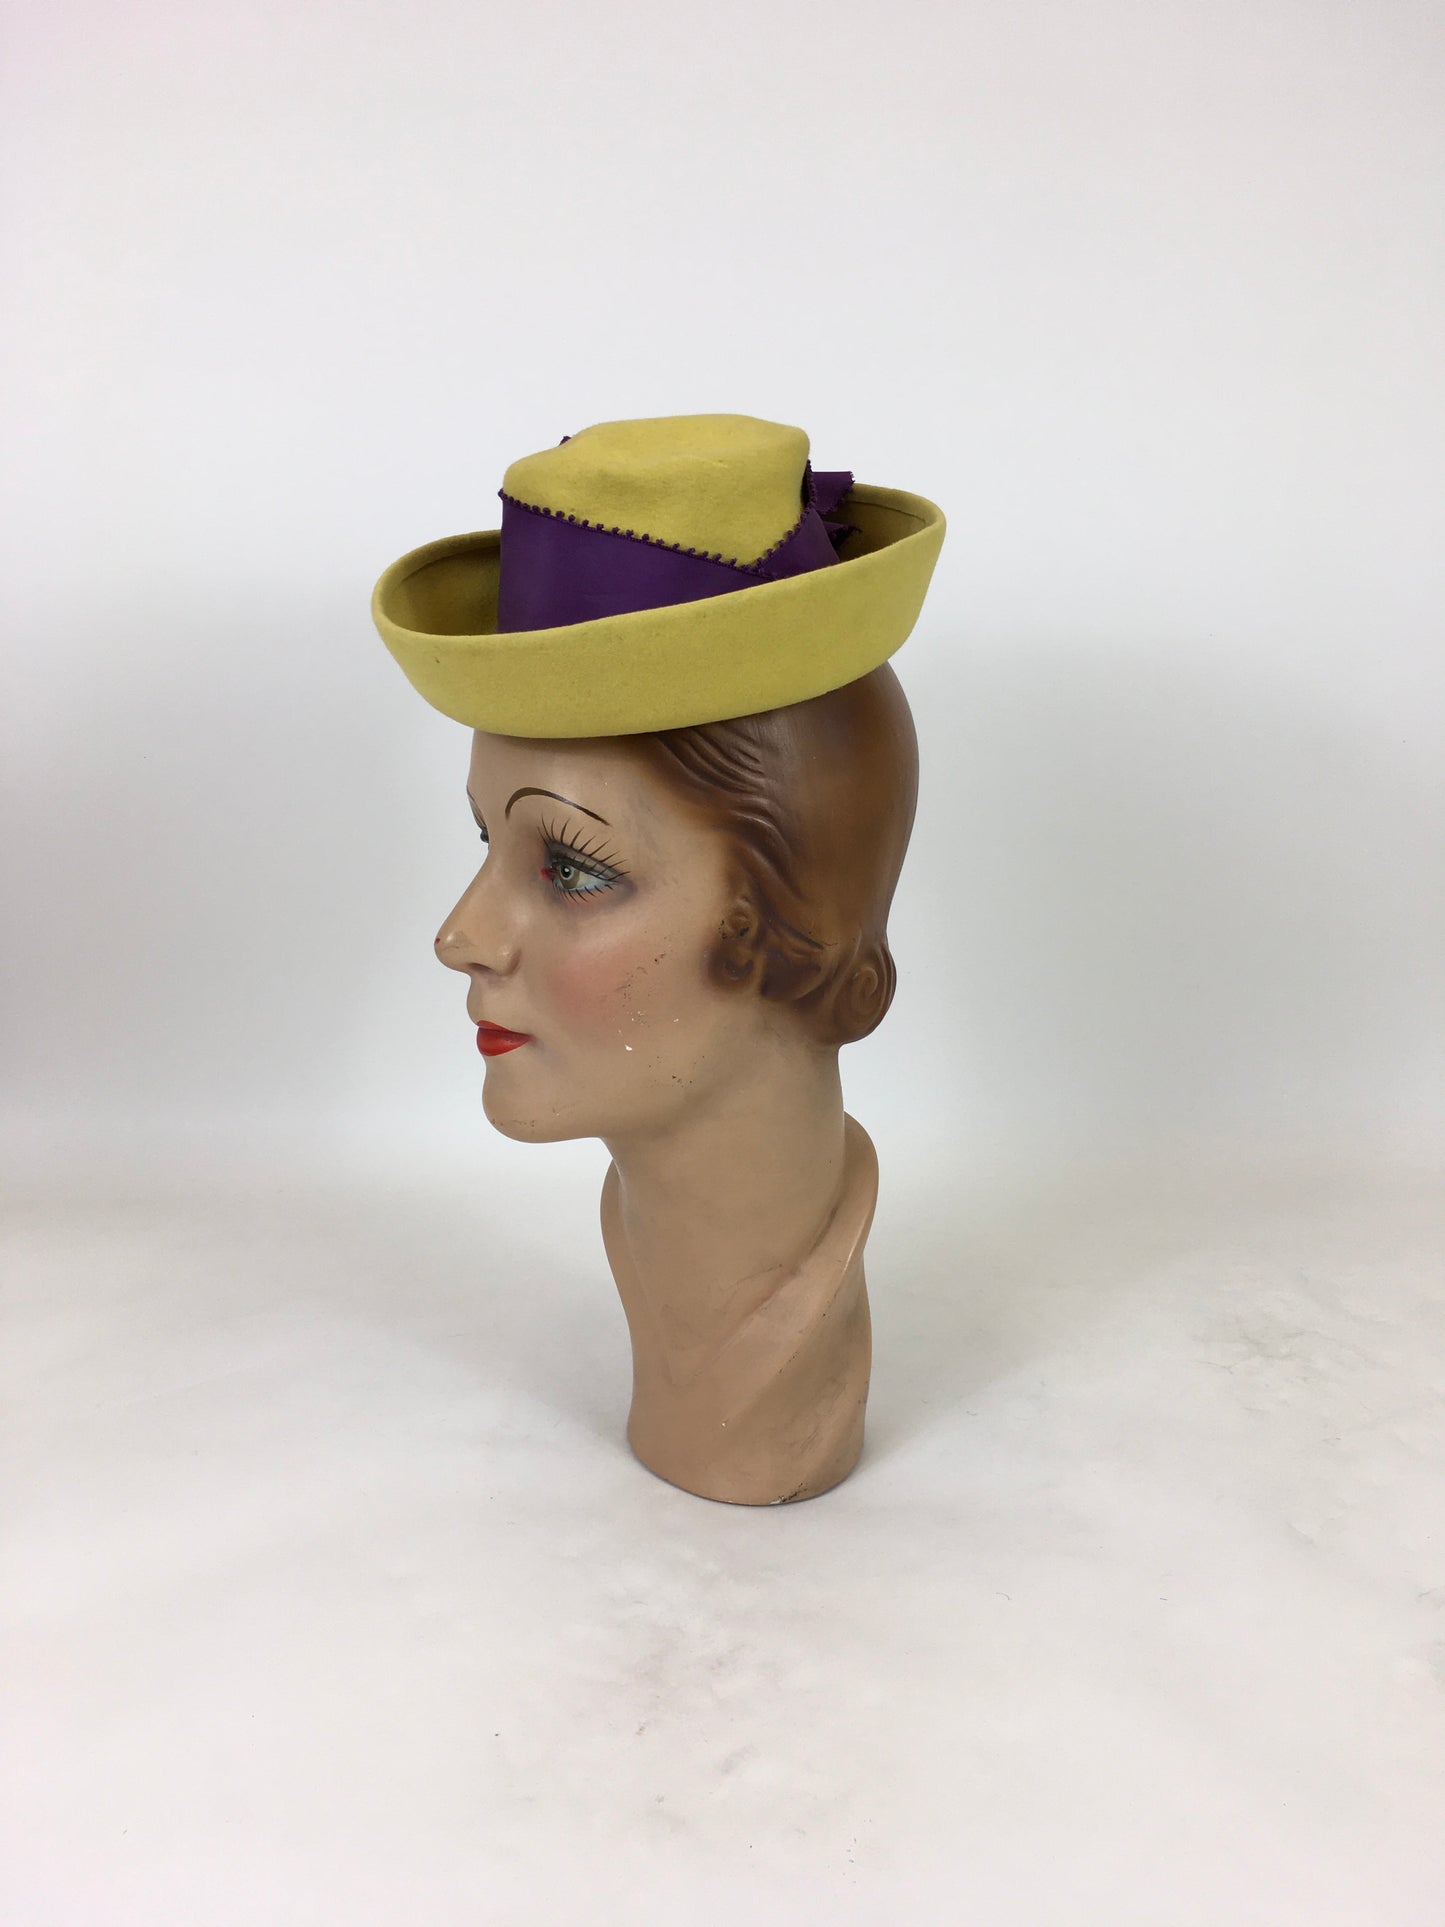 Original 1940's Sensational American Toy Tilt Hat - In Deep Yellow and Cadbury Purple